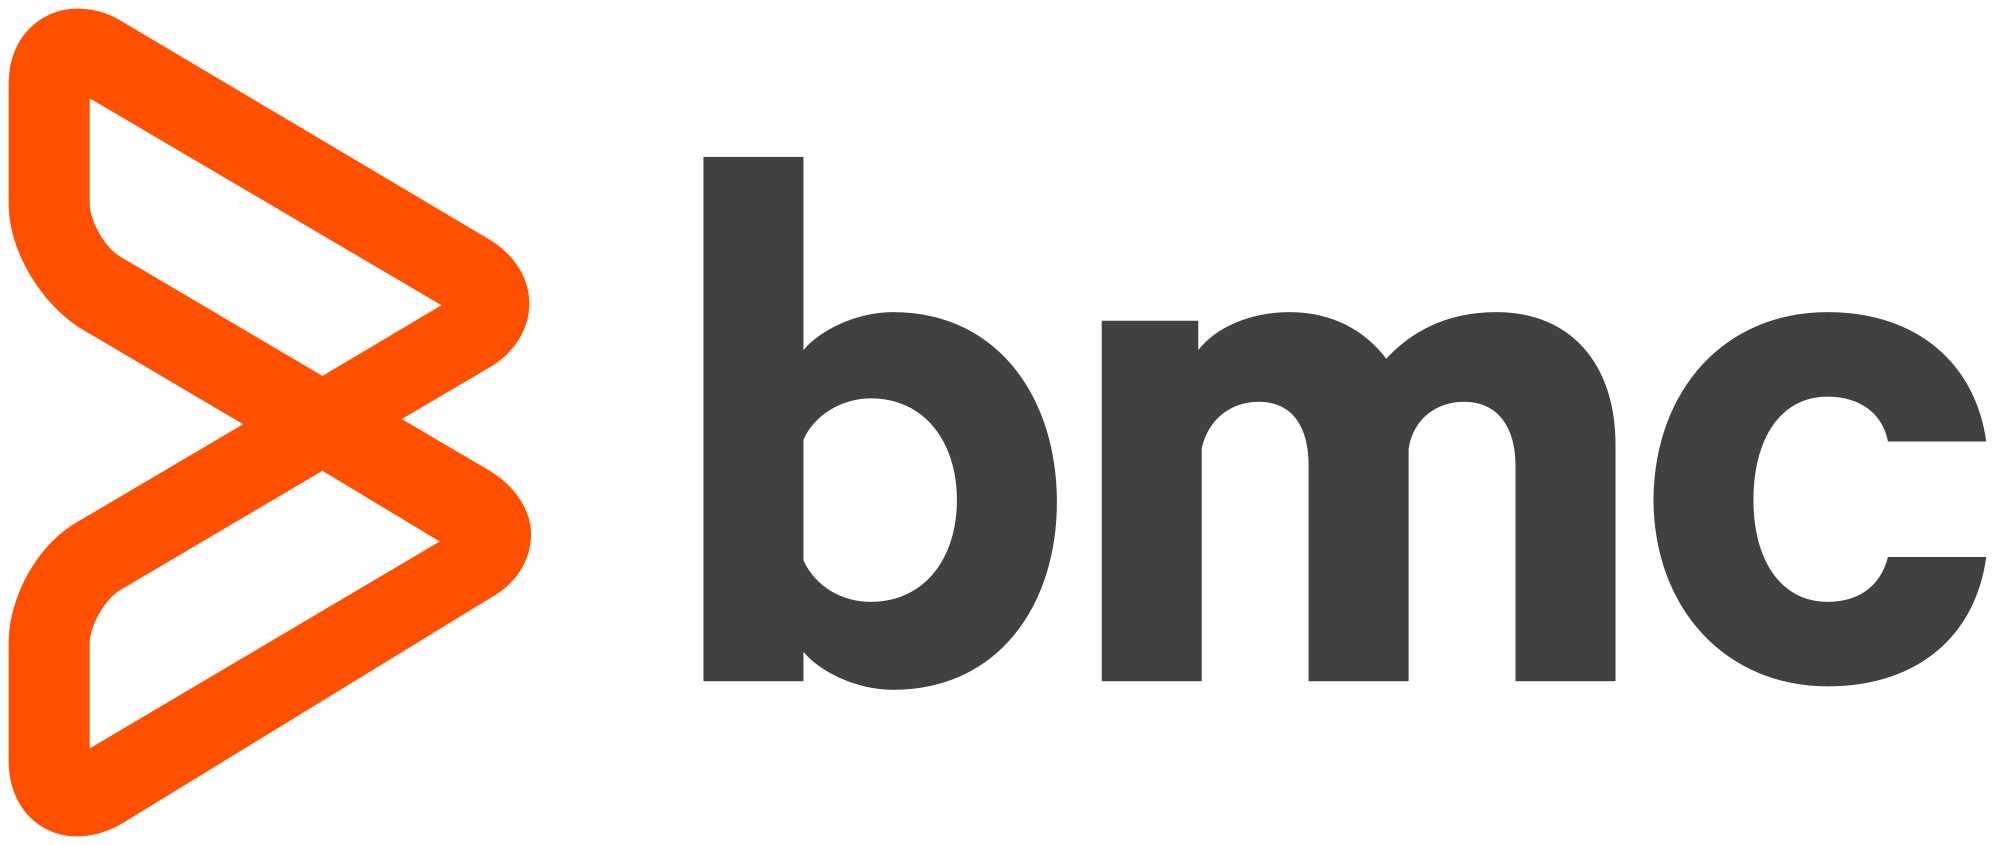 BMC Logo - BMC Software logo (2014).svg